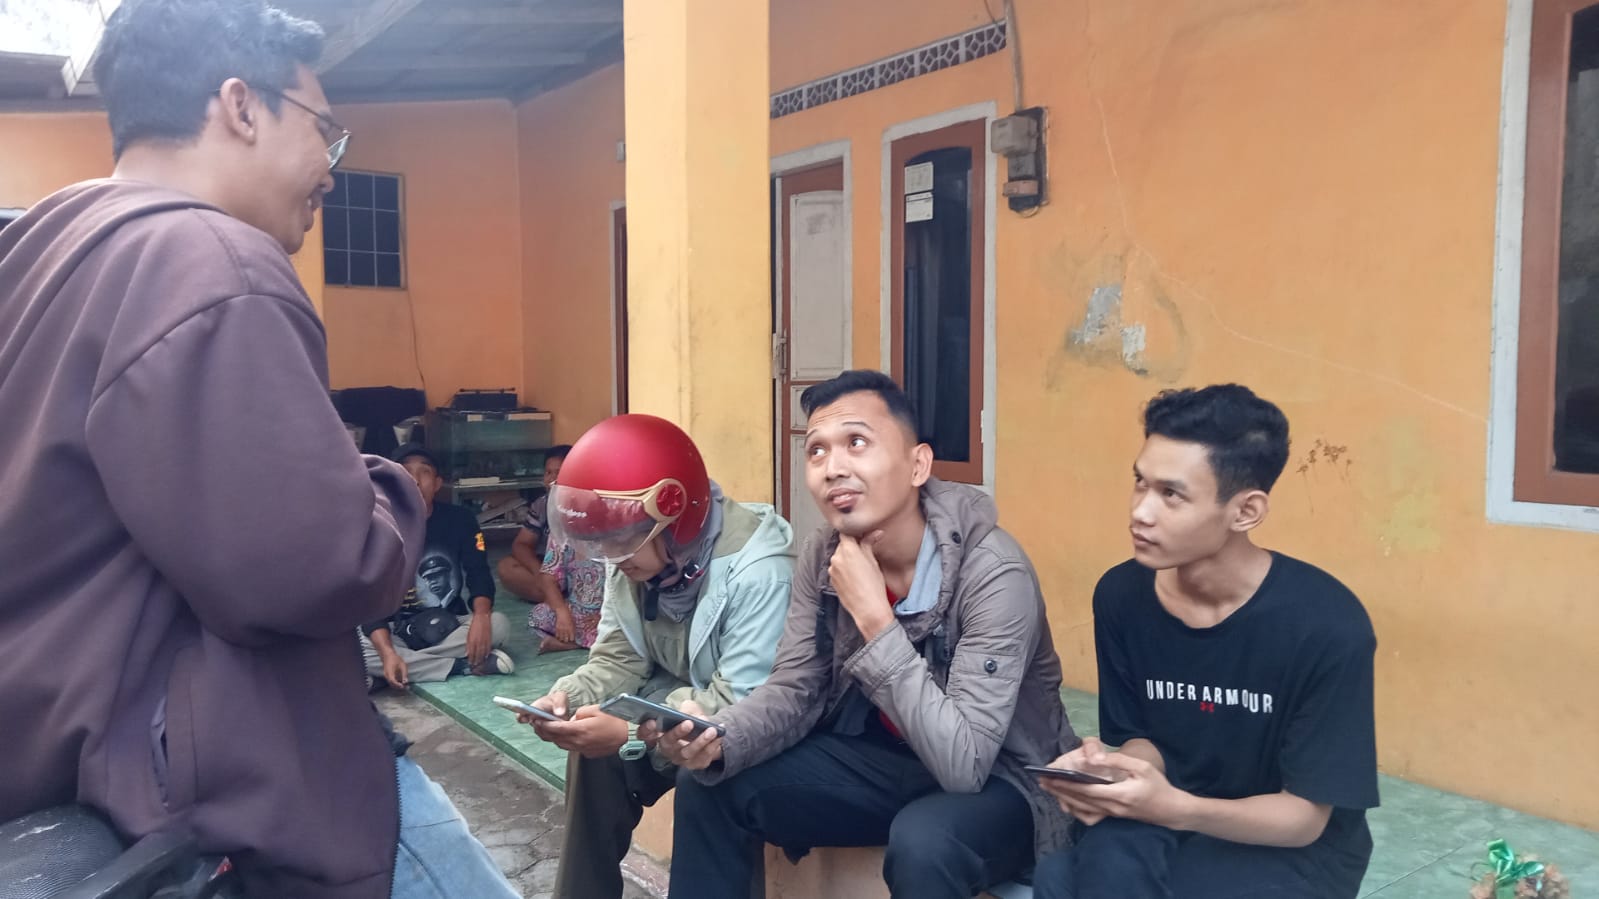 Pemuda Cirebon Dituduh Sebagai Bjorka, Muhammad Said Fikriansyah: IG Saya Sempat Dihack